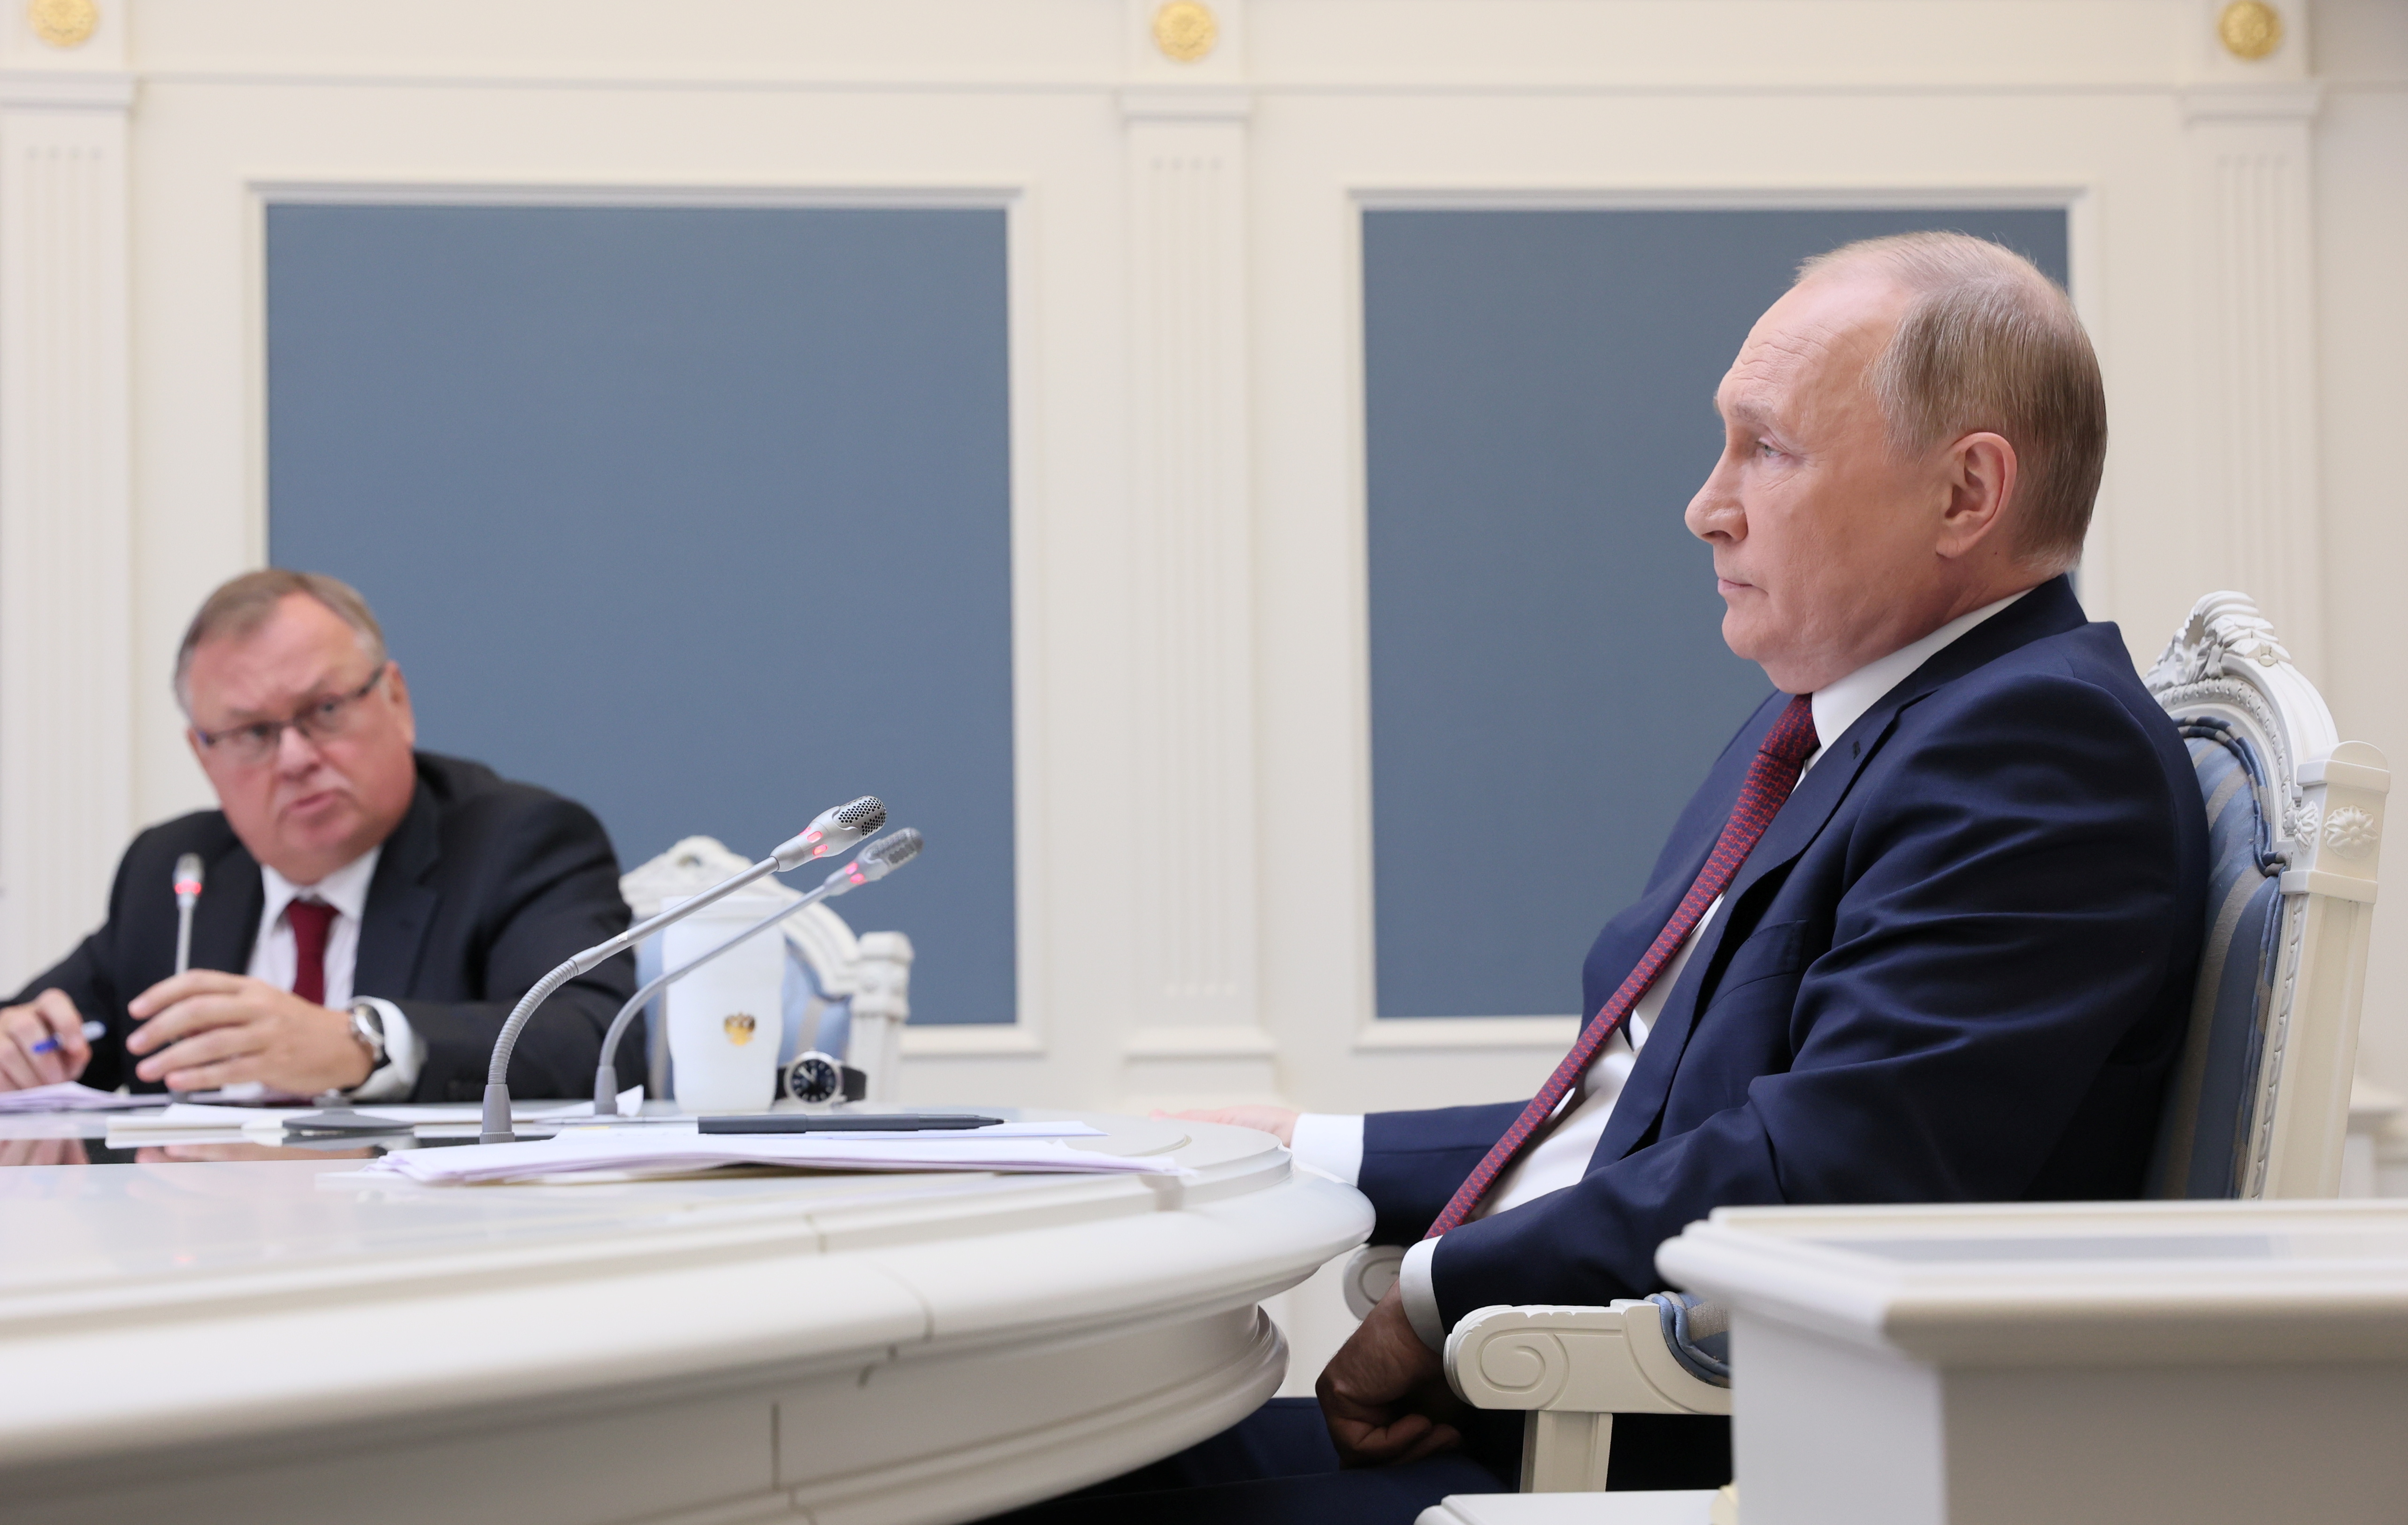 El president rus, Vladimir Putin, i el conseller delegat del banc VTB, Andrey Kostin, assisteixen a una sessió del Fòrum d'Inversió de Capital de VTB "Russia Calling!" mitjançant una videoconferència a Moscou, Rússia, el 30 de novembre de 2021. Sputnik/Mikhail Metzel/Pool via REUTERS